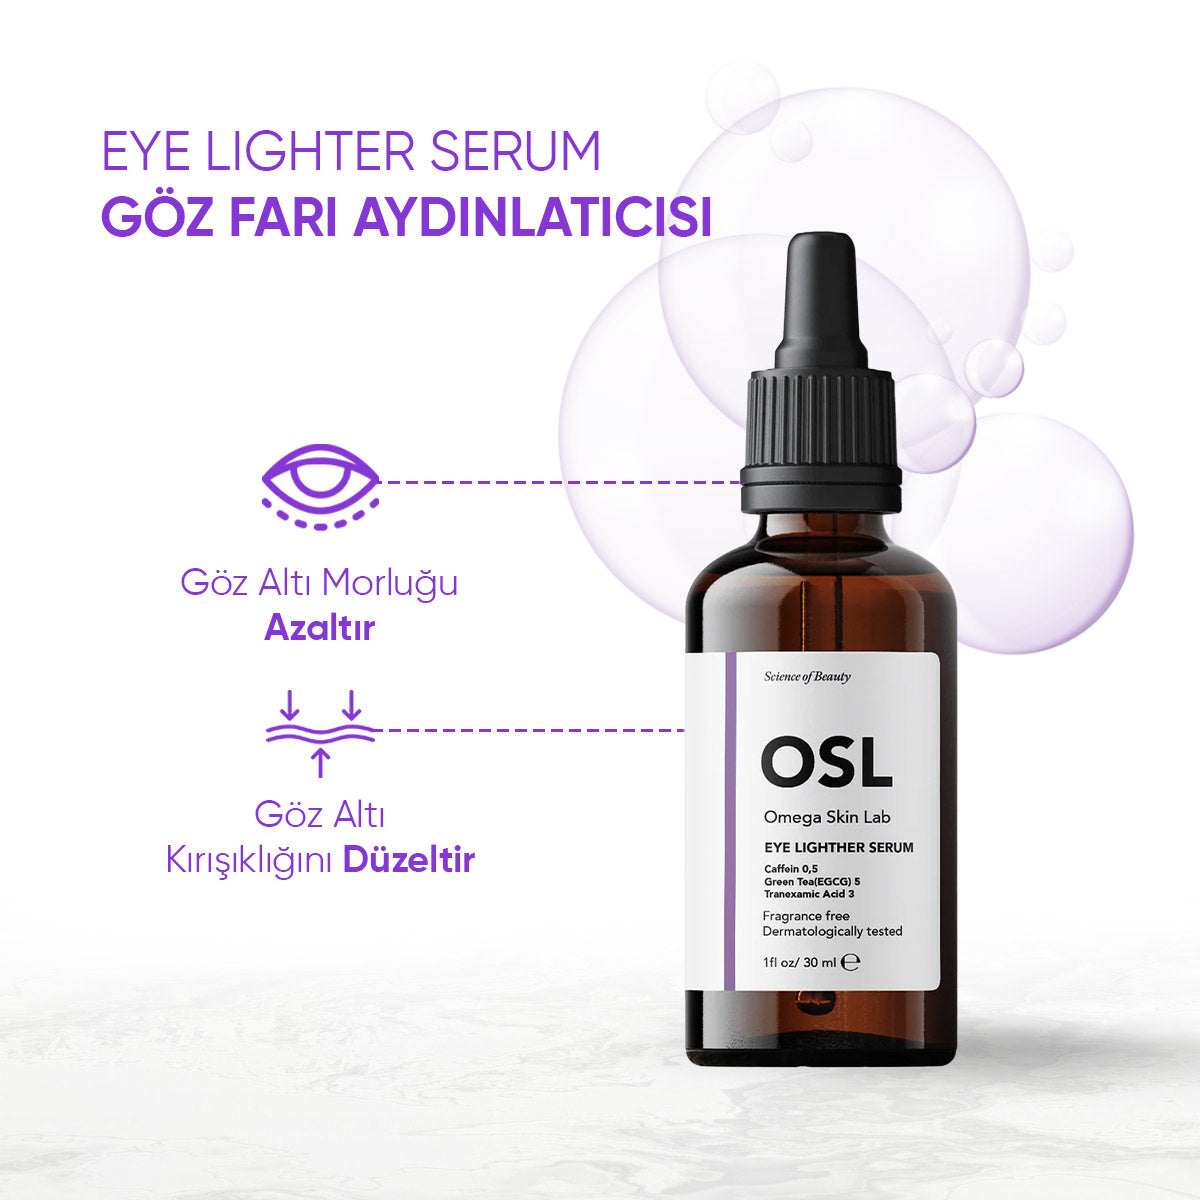 Eye Lighter Serum 30ml (Göz Çevresi Serumu)